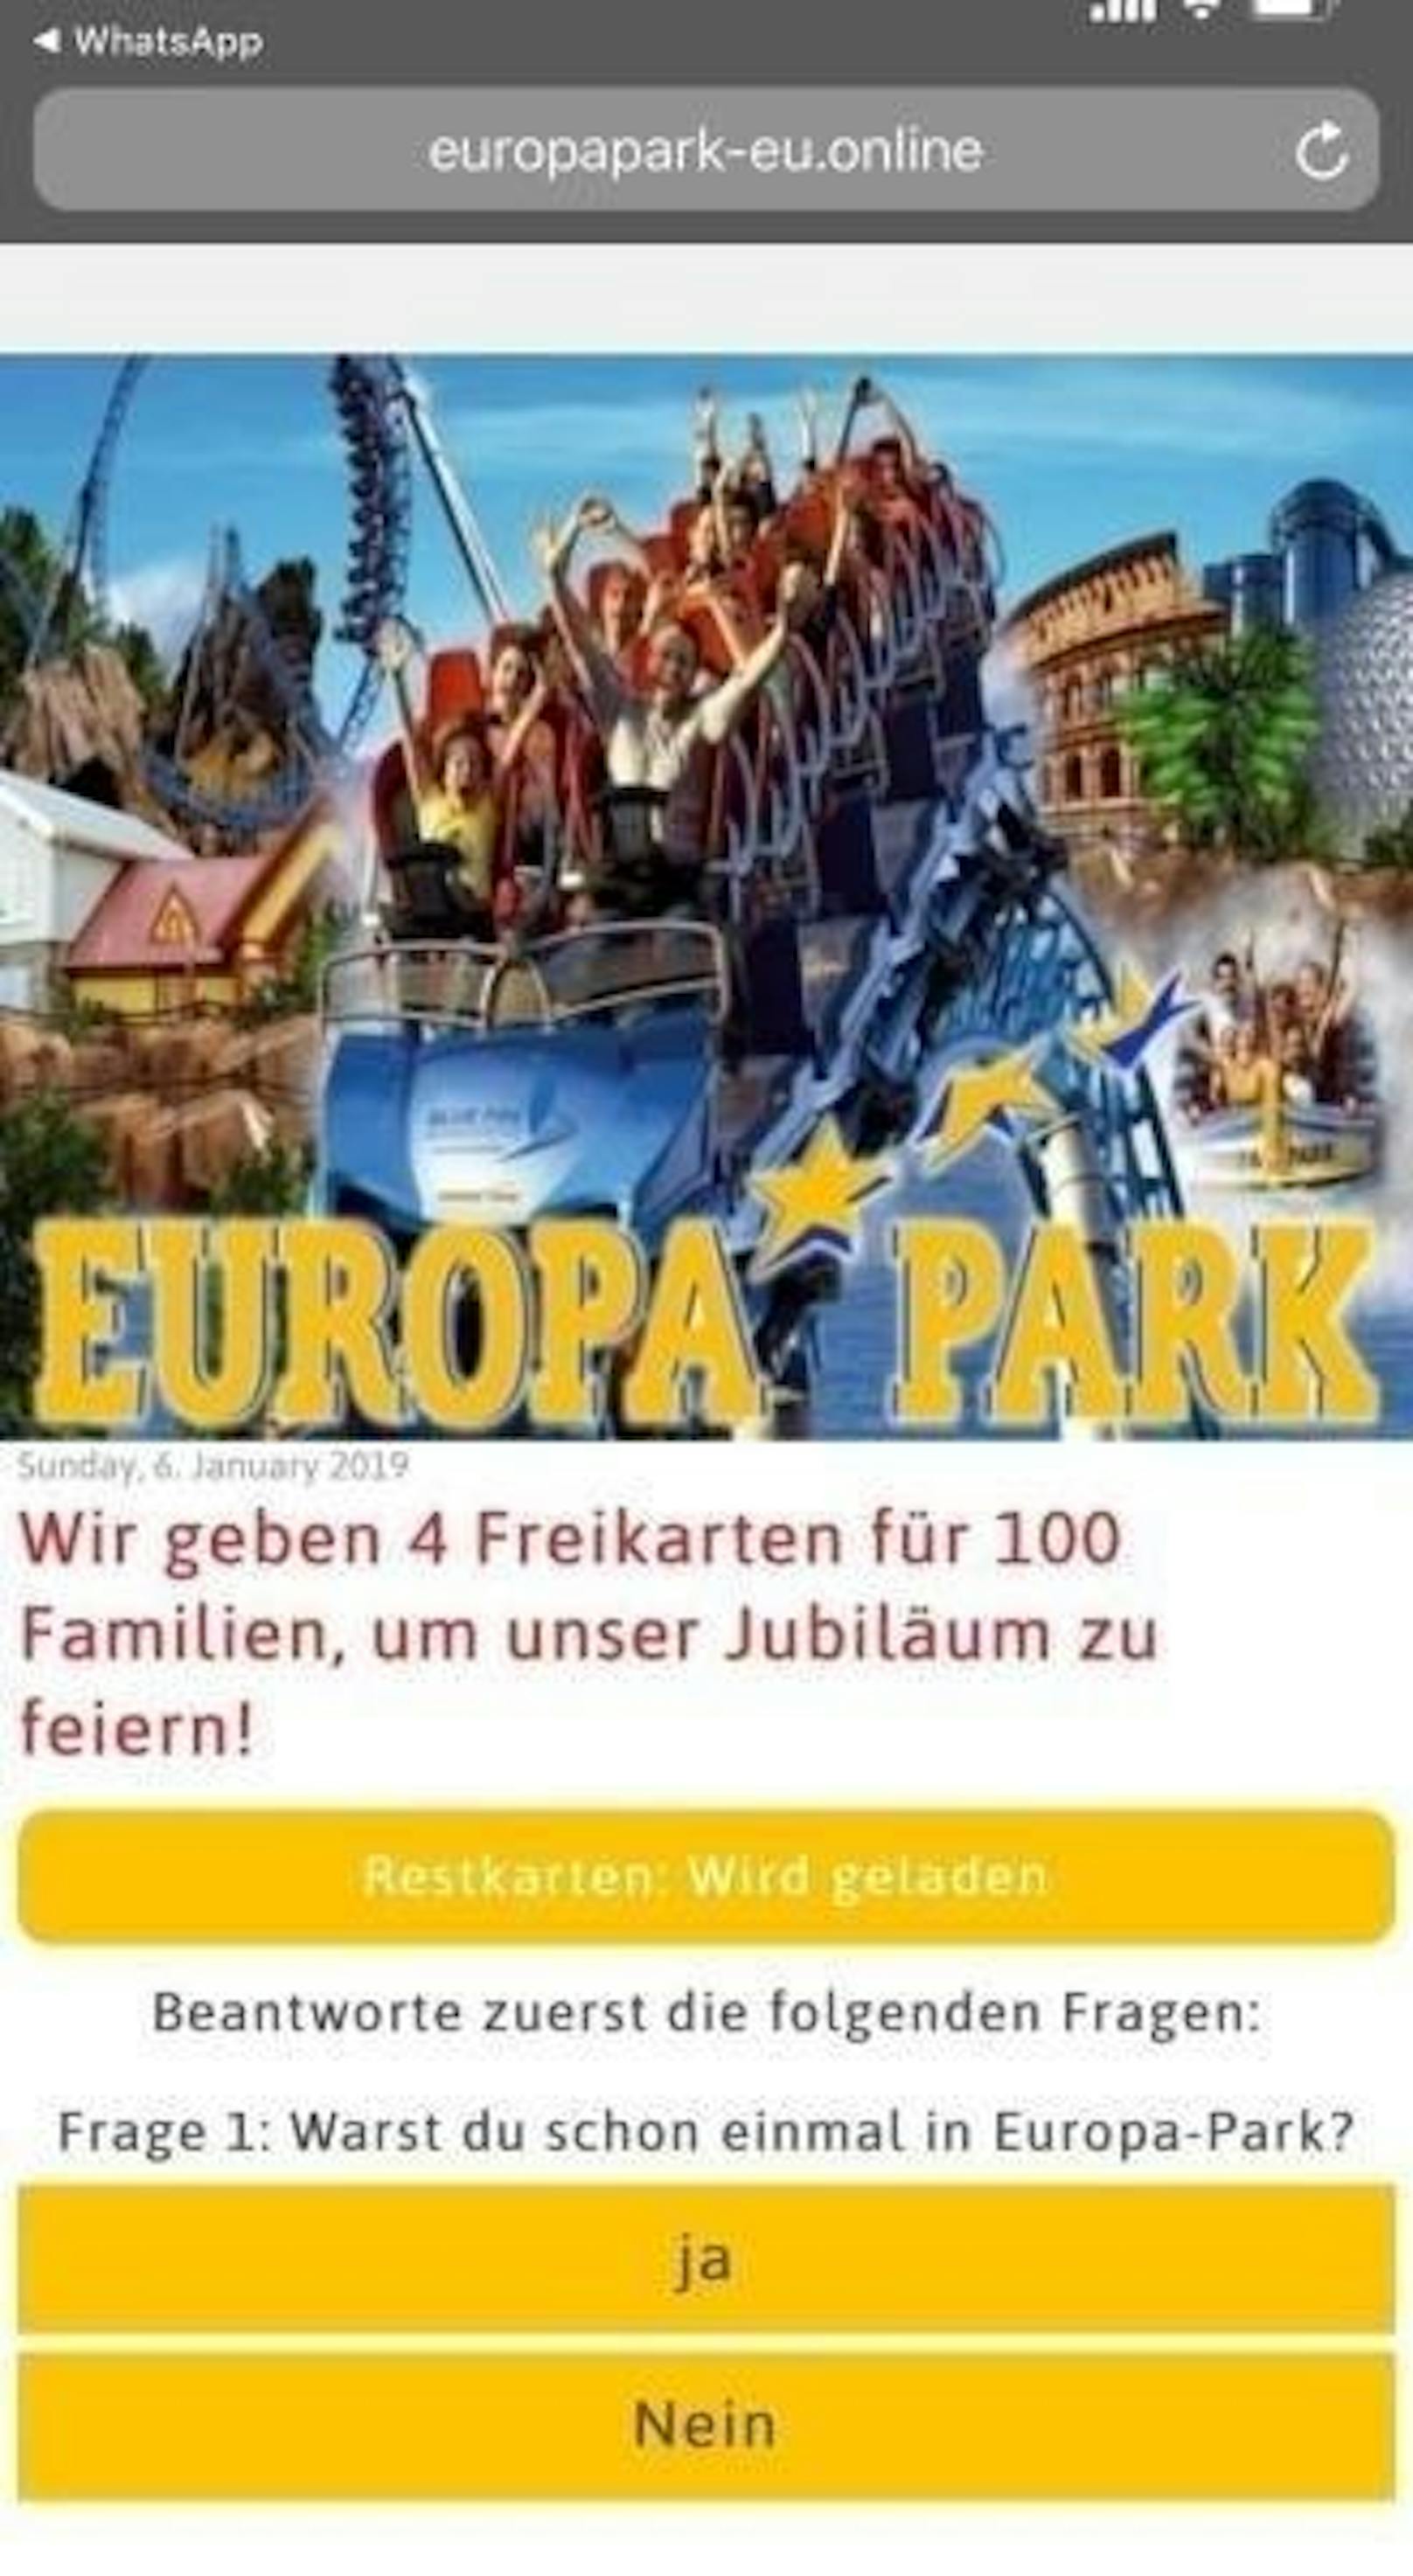 100 Familien sollen je fünf Freikarten erhalten. Die Autoren des Fake-Angebots gaukeln vor, es handle sich um eine offizielle Aktion des Europa-Parks.